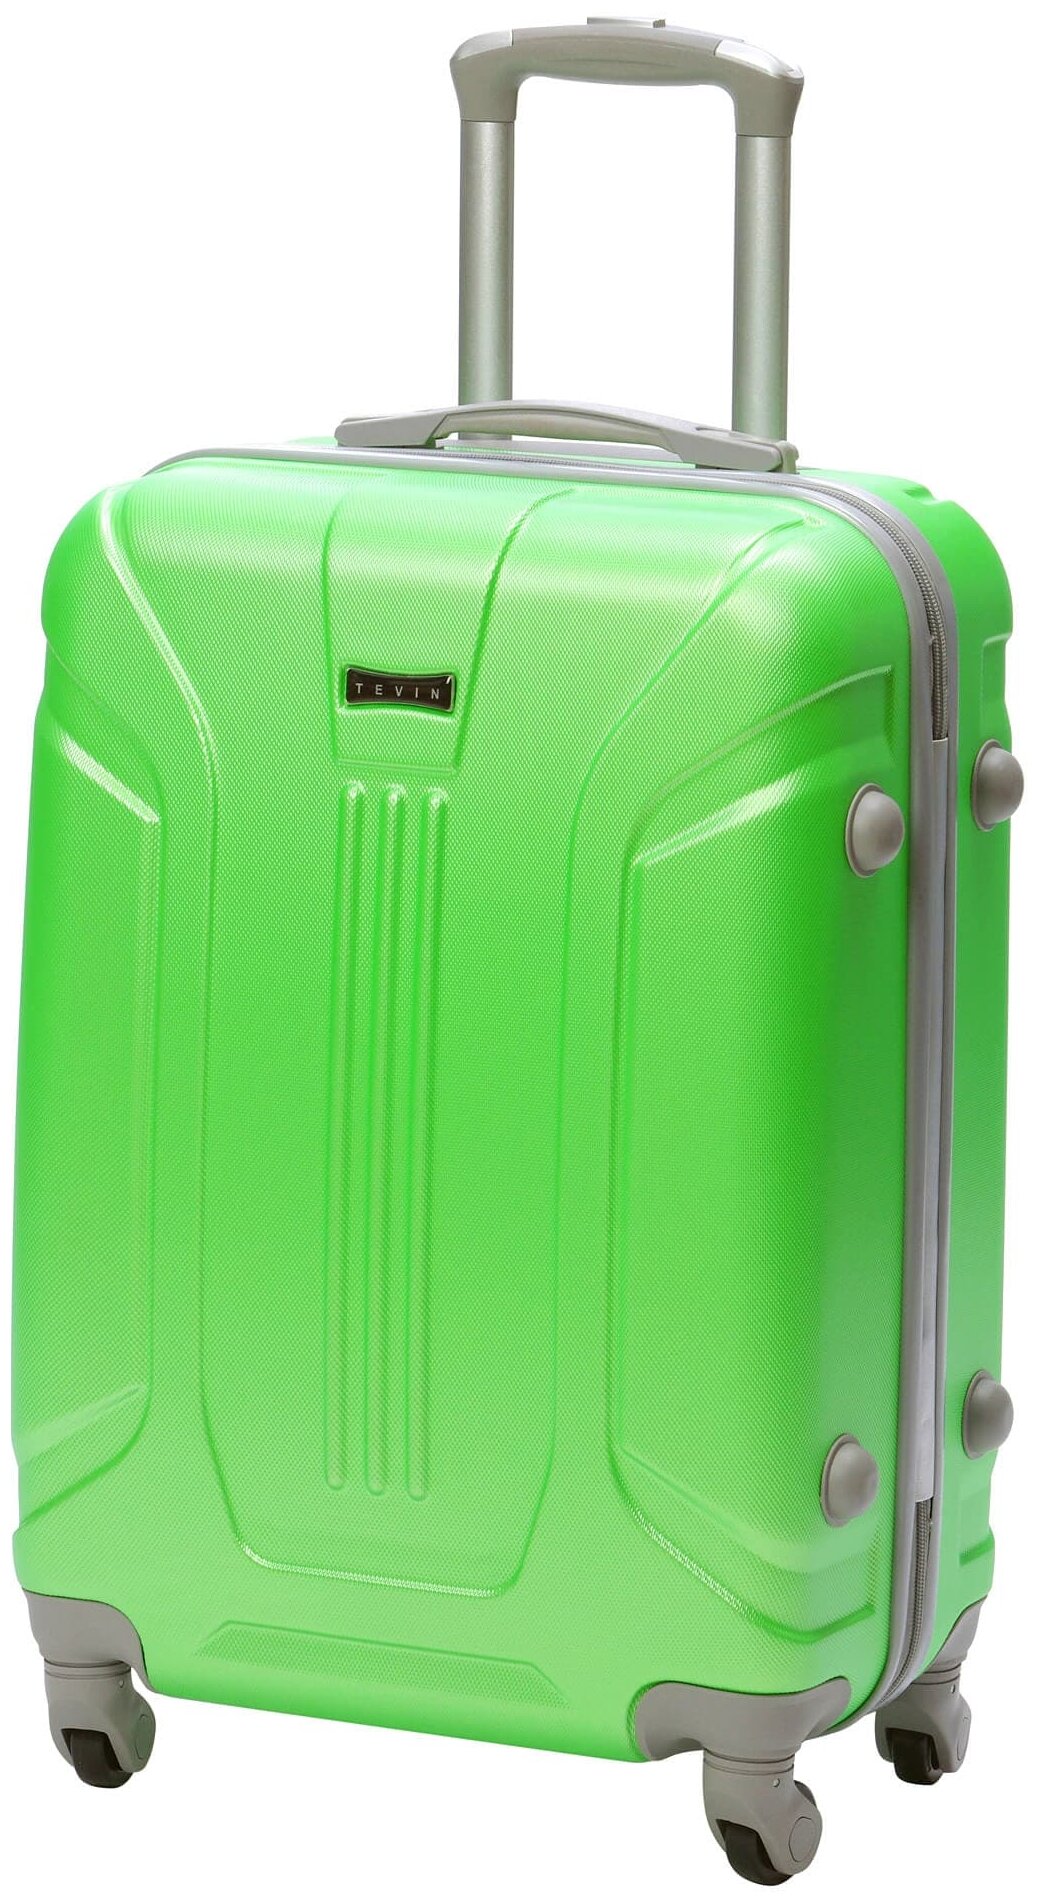 Чемодан на колесах дорожный средний багаж на двоих для путешествий женский m+ TEVIN размер М+ 68 см 77 л легкий прочный abs пластик Зеленый неон